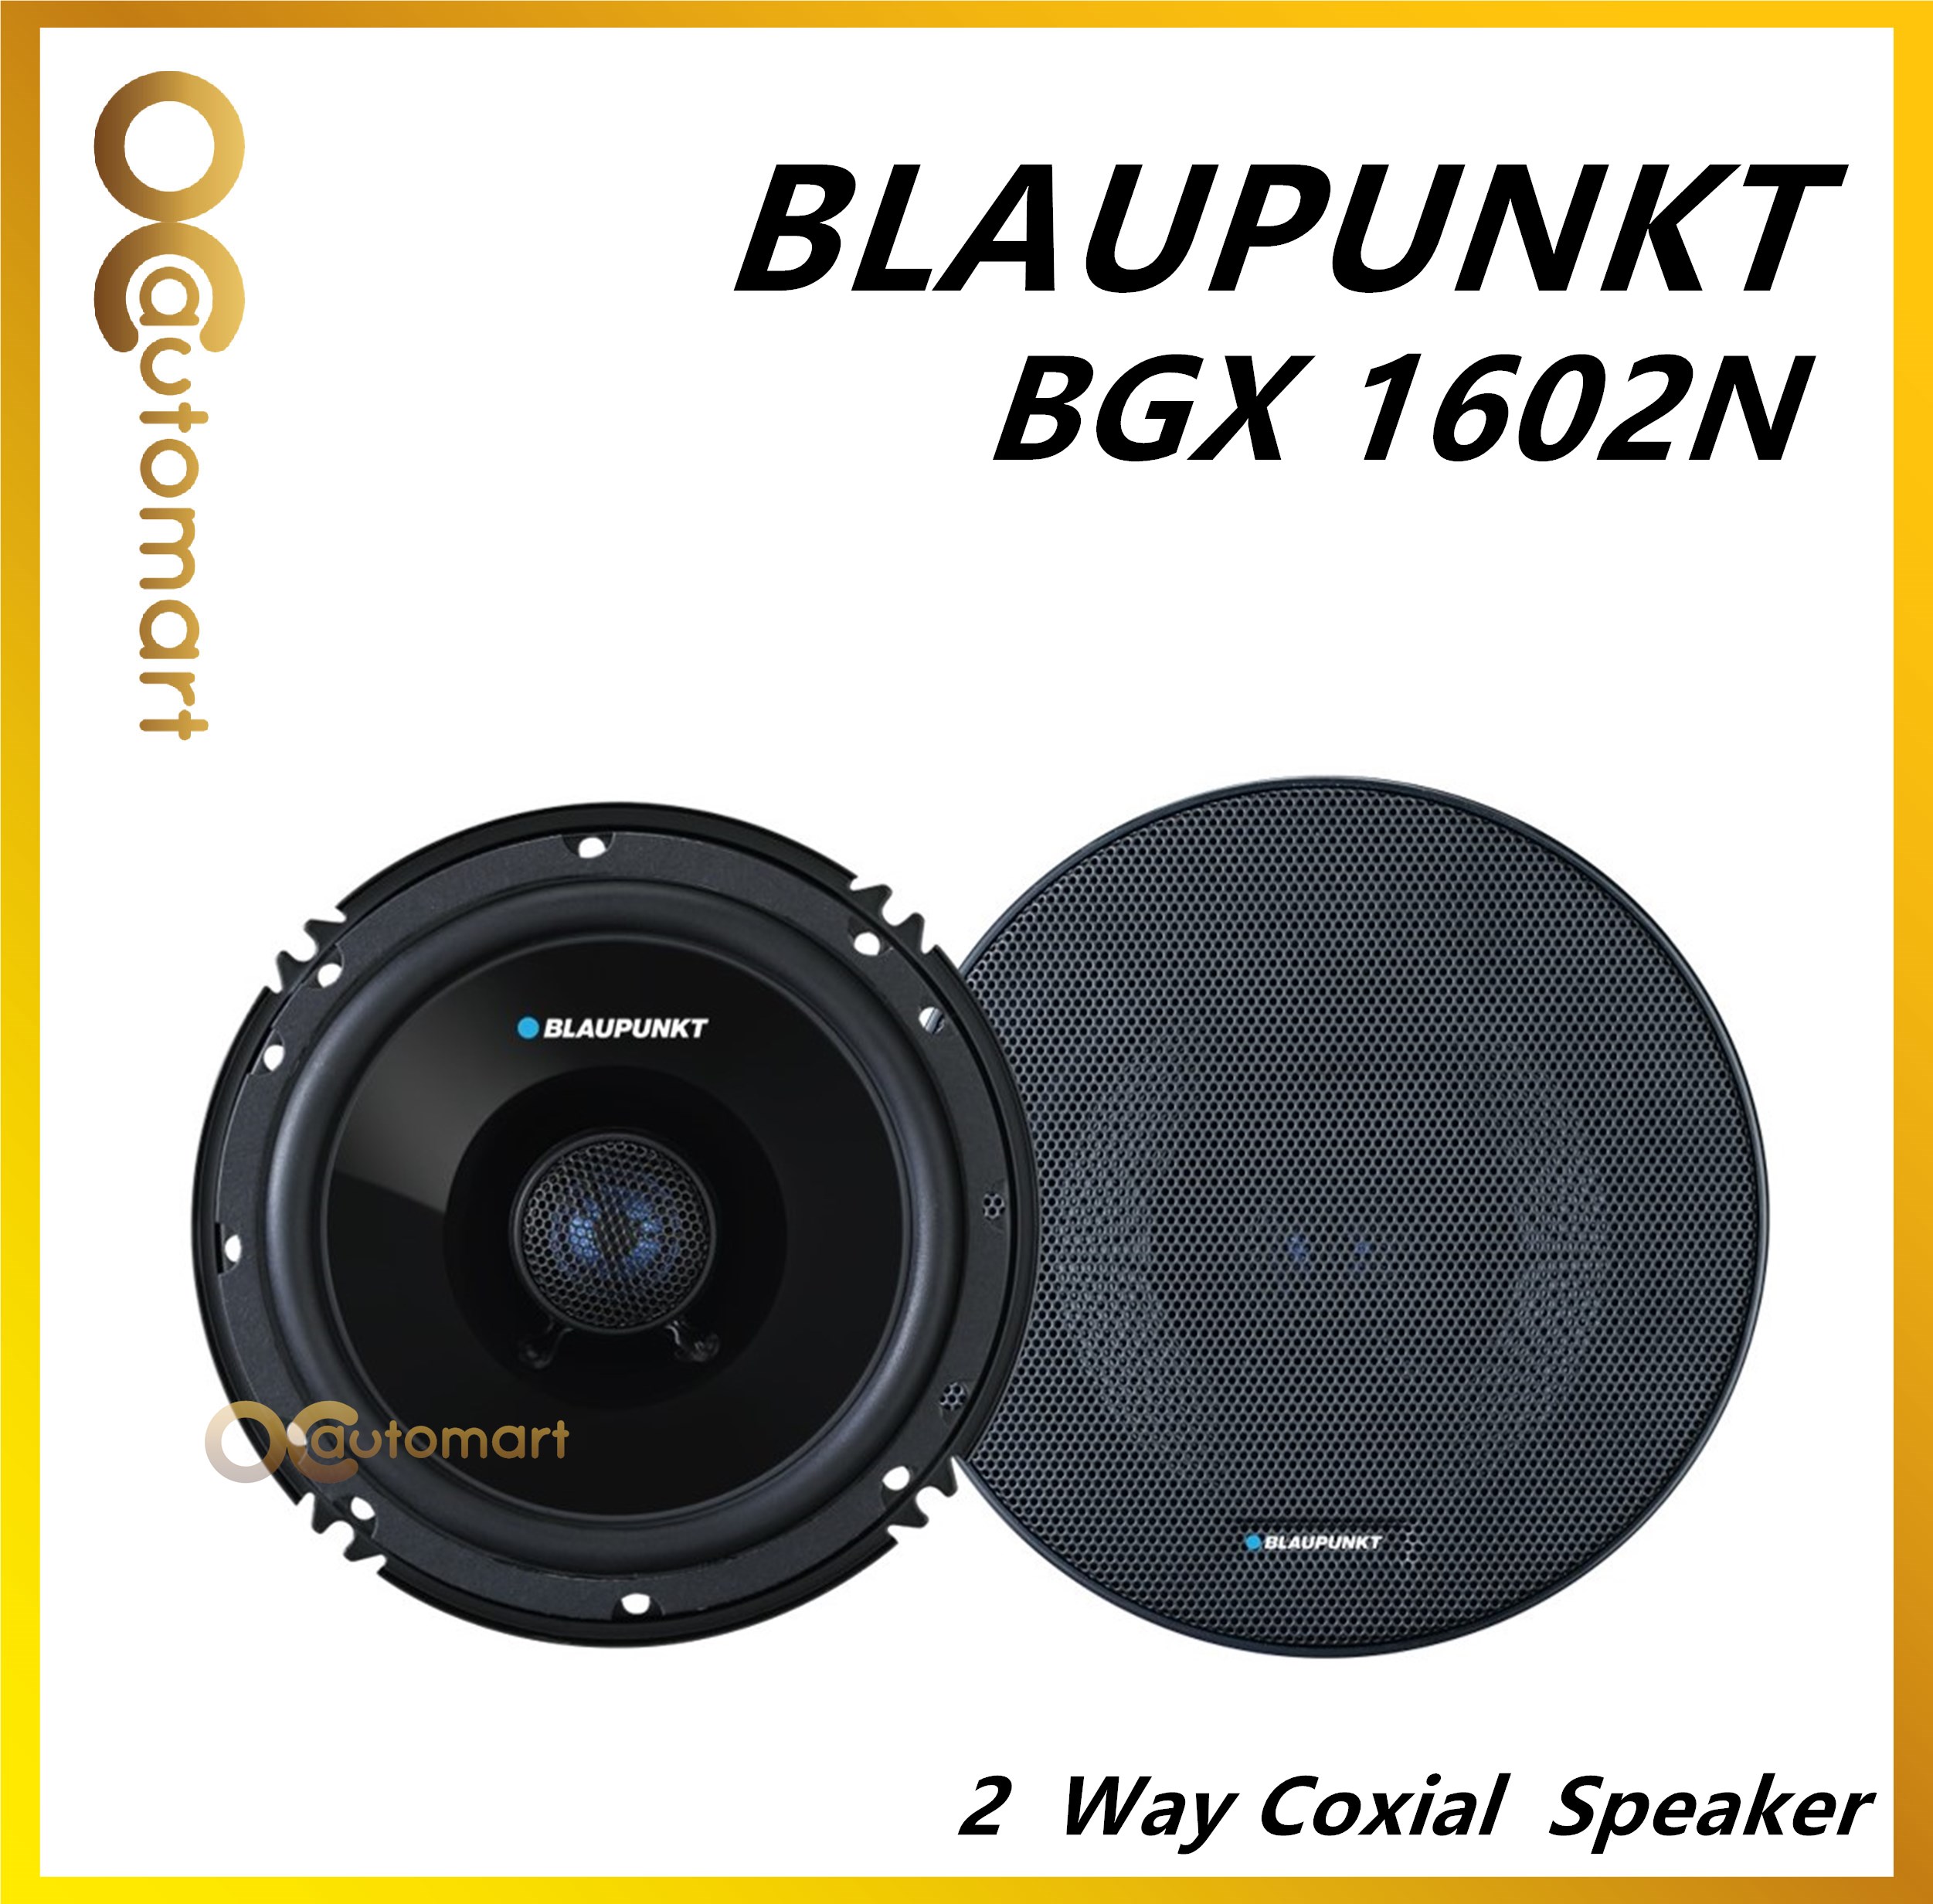 Blaupunkt 6" 100 Watts 4 Ohms 2 Way Coaxial Car Speakers BGX 1602 N